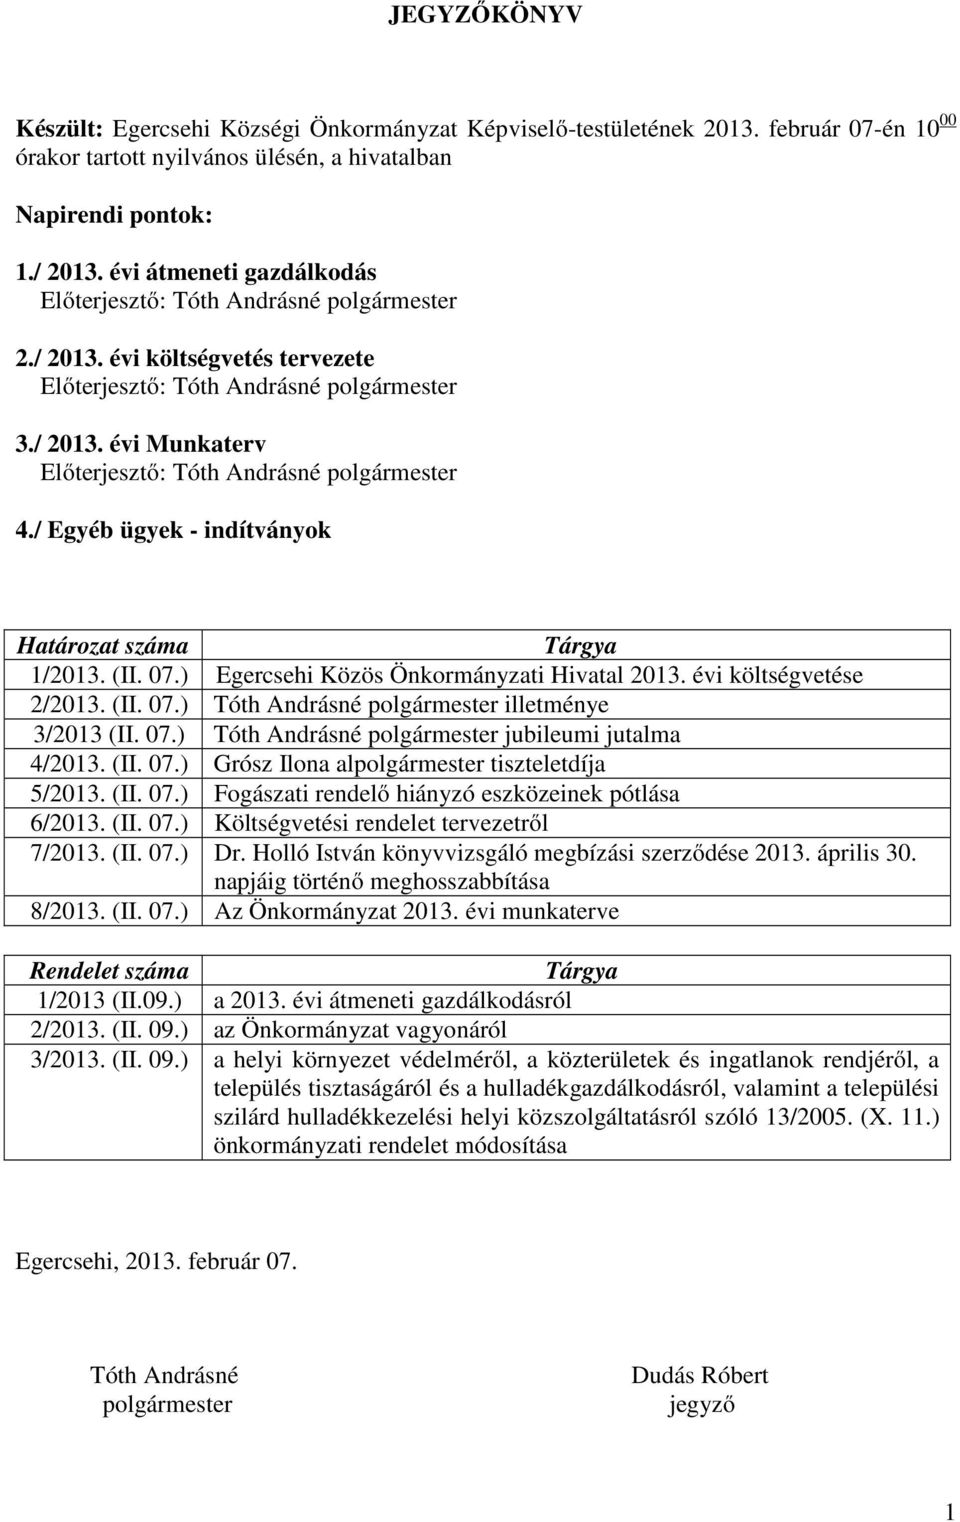 / Egyéb ügyek - indítványok Határozat száma Tárgya 1/2013. (II. 07.) Egercsehi Közös Önkormányzati Hivatal 2013. évi költségvetése 2/2013. (II. 07.) Tóth Andrásné polgármester illetménye 3/2013 (II.